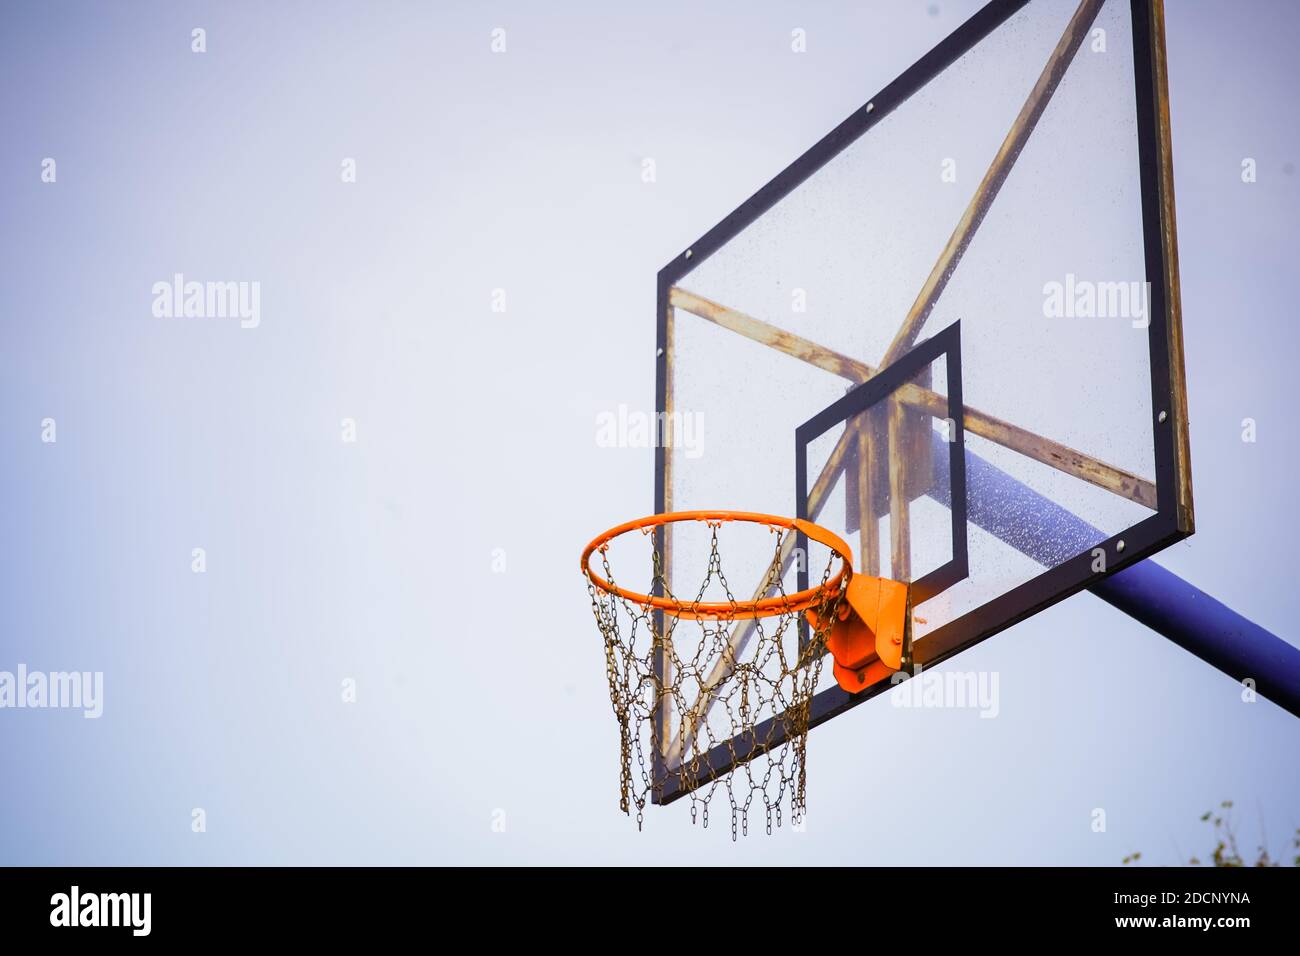 Basketballkorb mit transparentem Brett und Ketten statt Netz Gegen den hellblauen klaren Himmel am Nachmittag mit Eine leichte dunkle Vignette Stockfoto